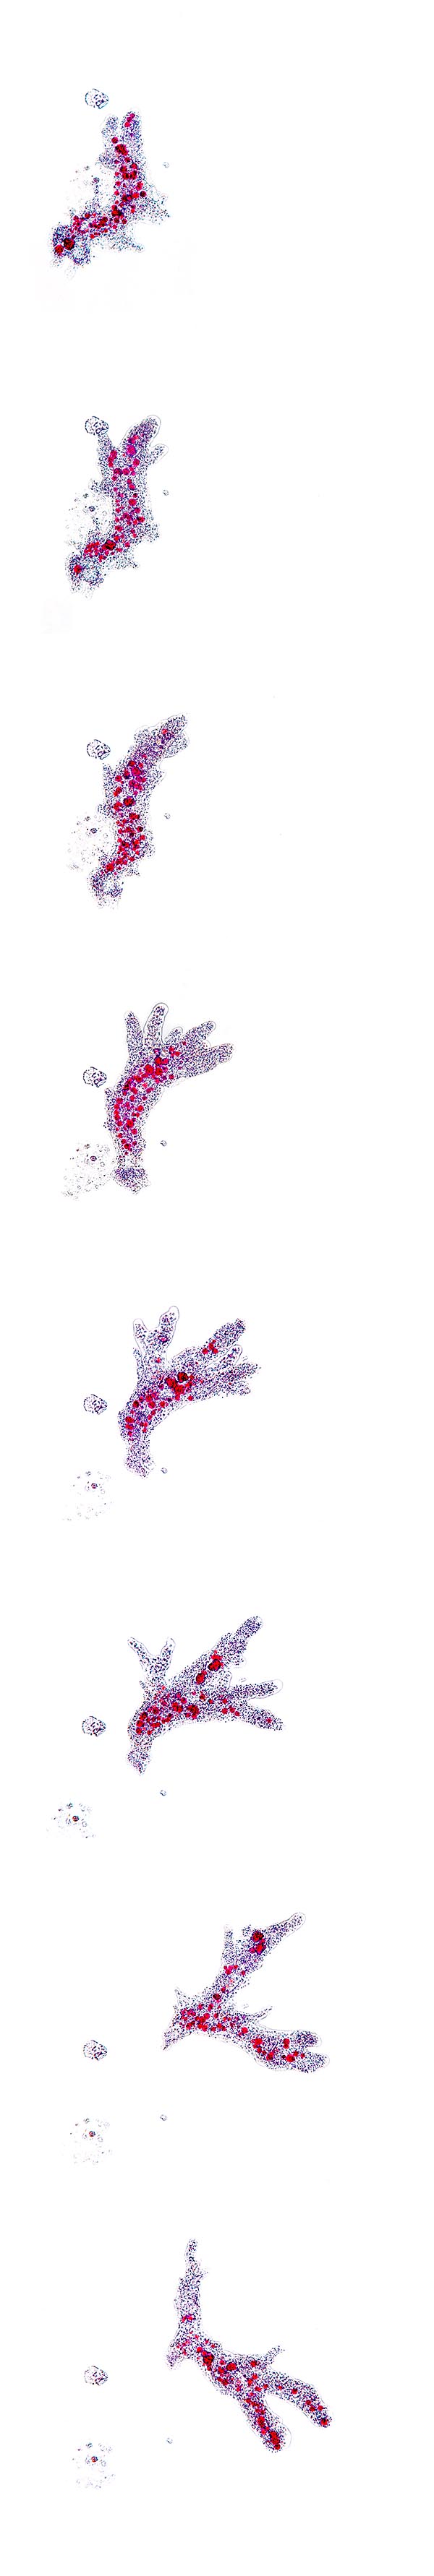 Séquence de mouvement d’Amoeba proteus © Giuseppe Mazza